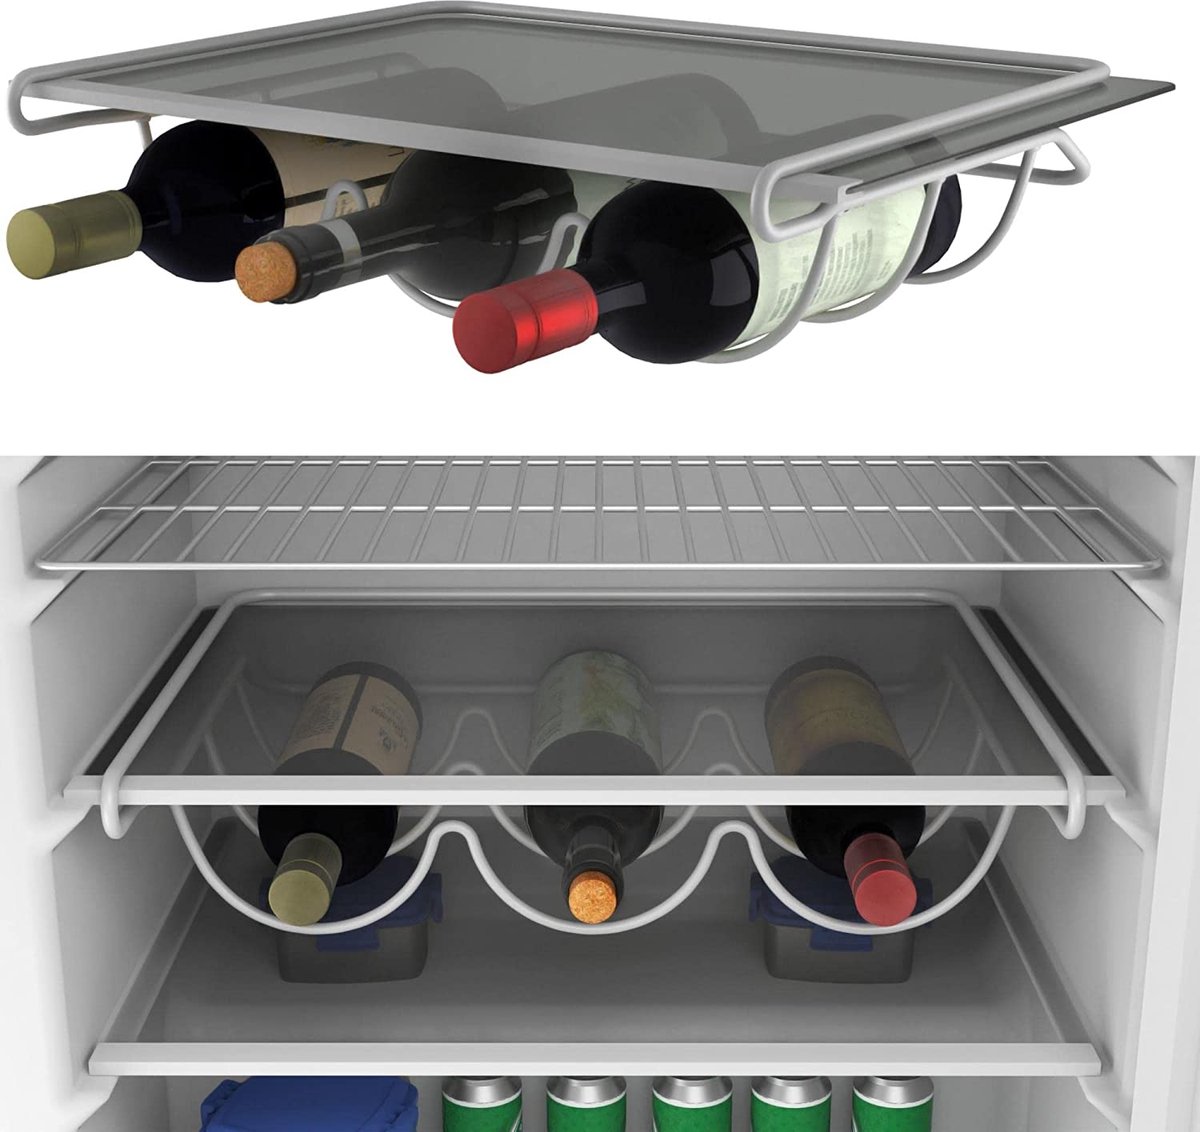 Koelkast organizer koelkast bakjes koelkast organizer doorzichtig koelkast bewaardoos koelkast opbergbak